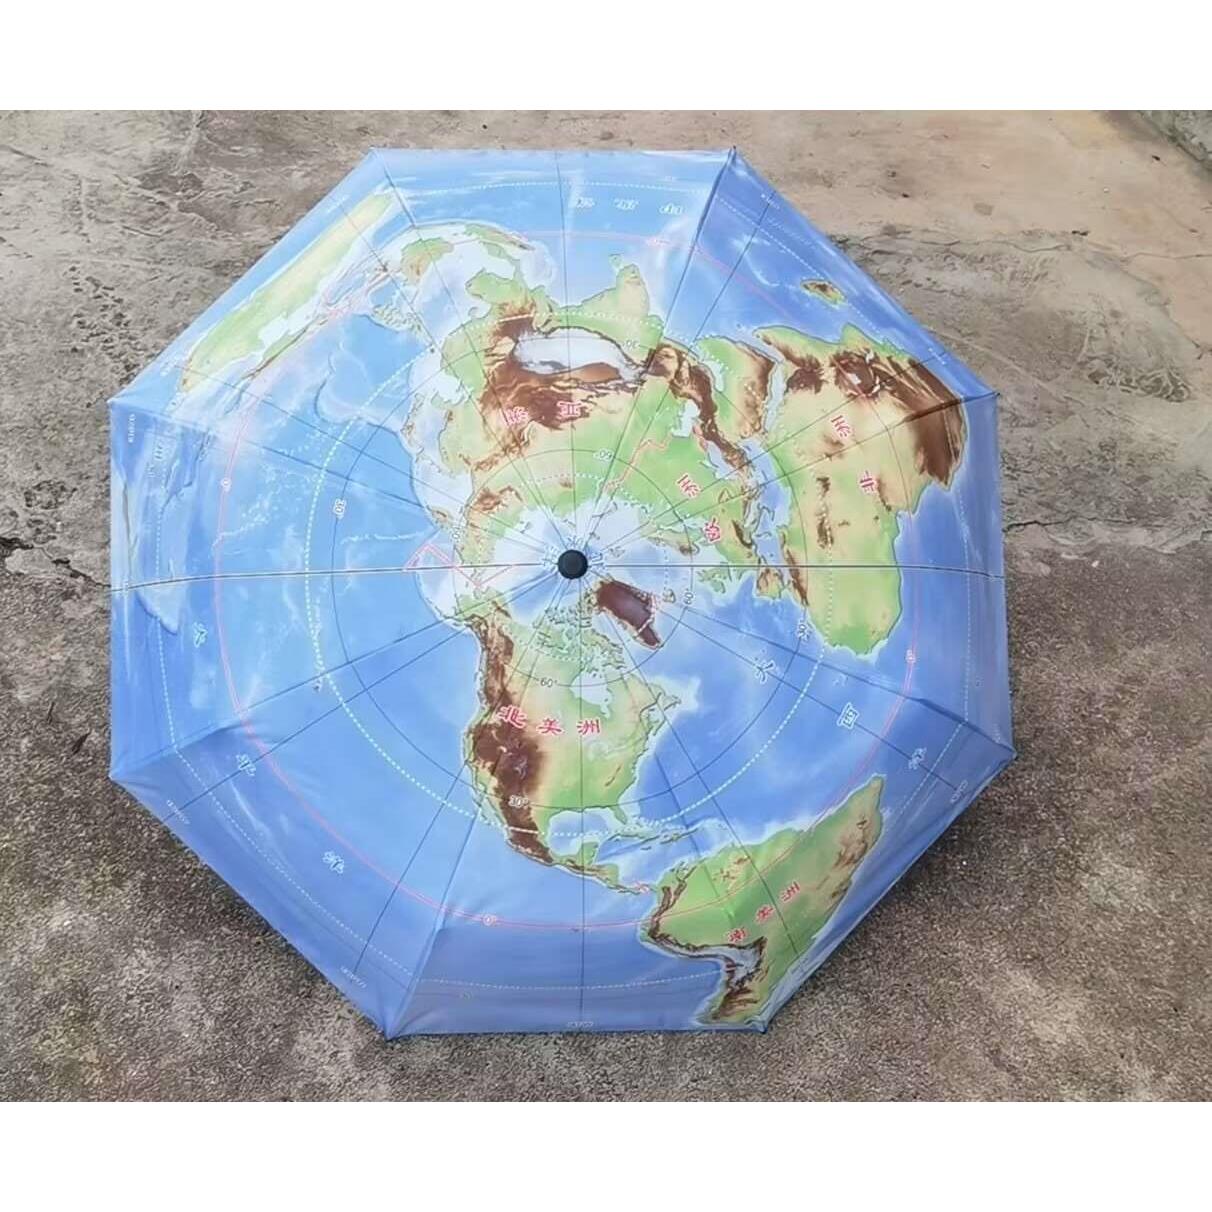 高档地图伞三折叠晴雨伞展示别致北极为中心50°S以北海陆双十